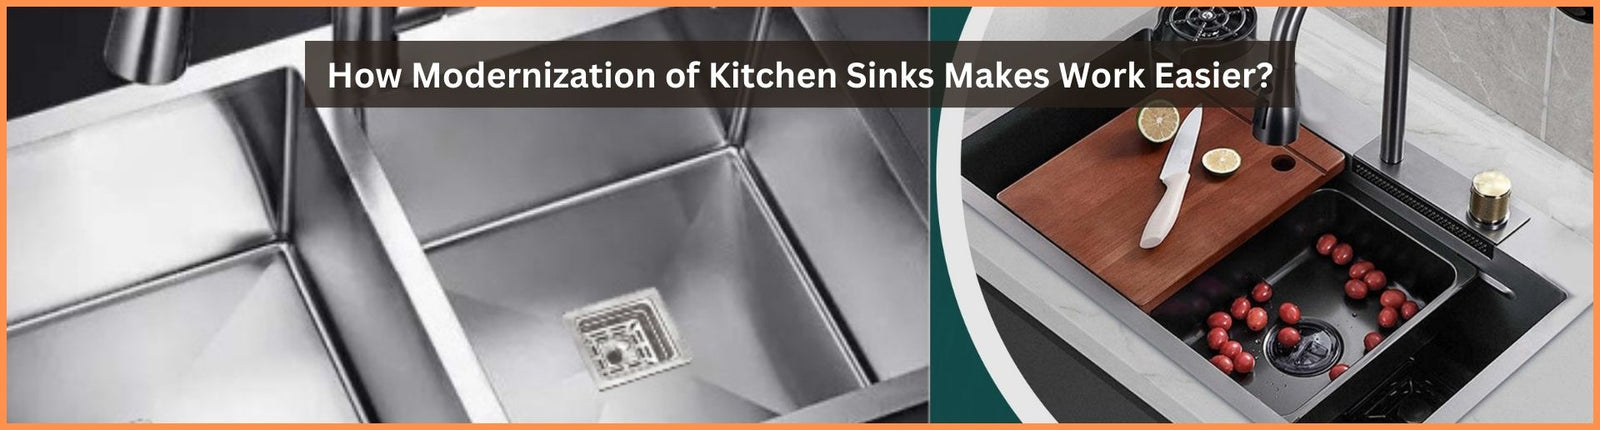 How Modernization of Kitchen Sinks Makes Work Easier